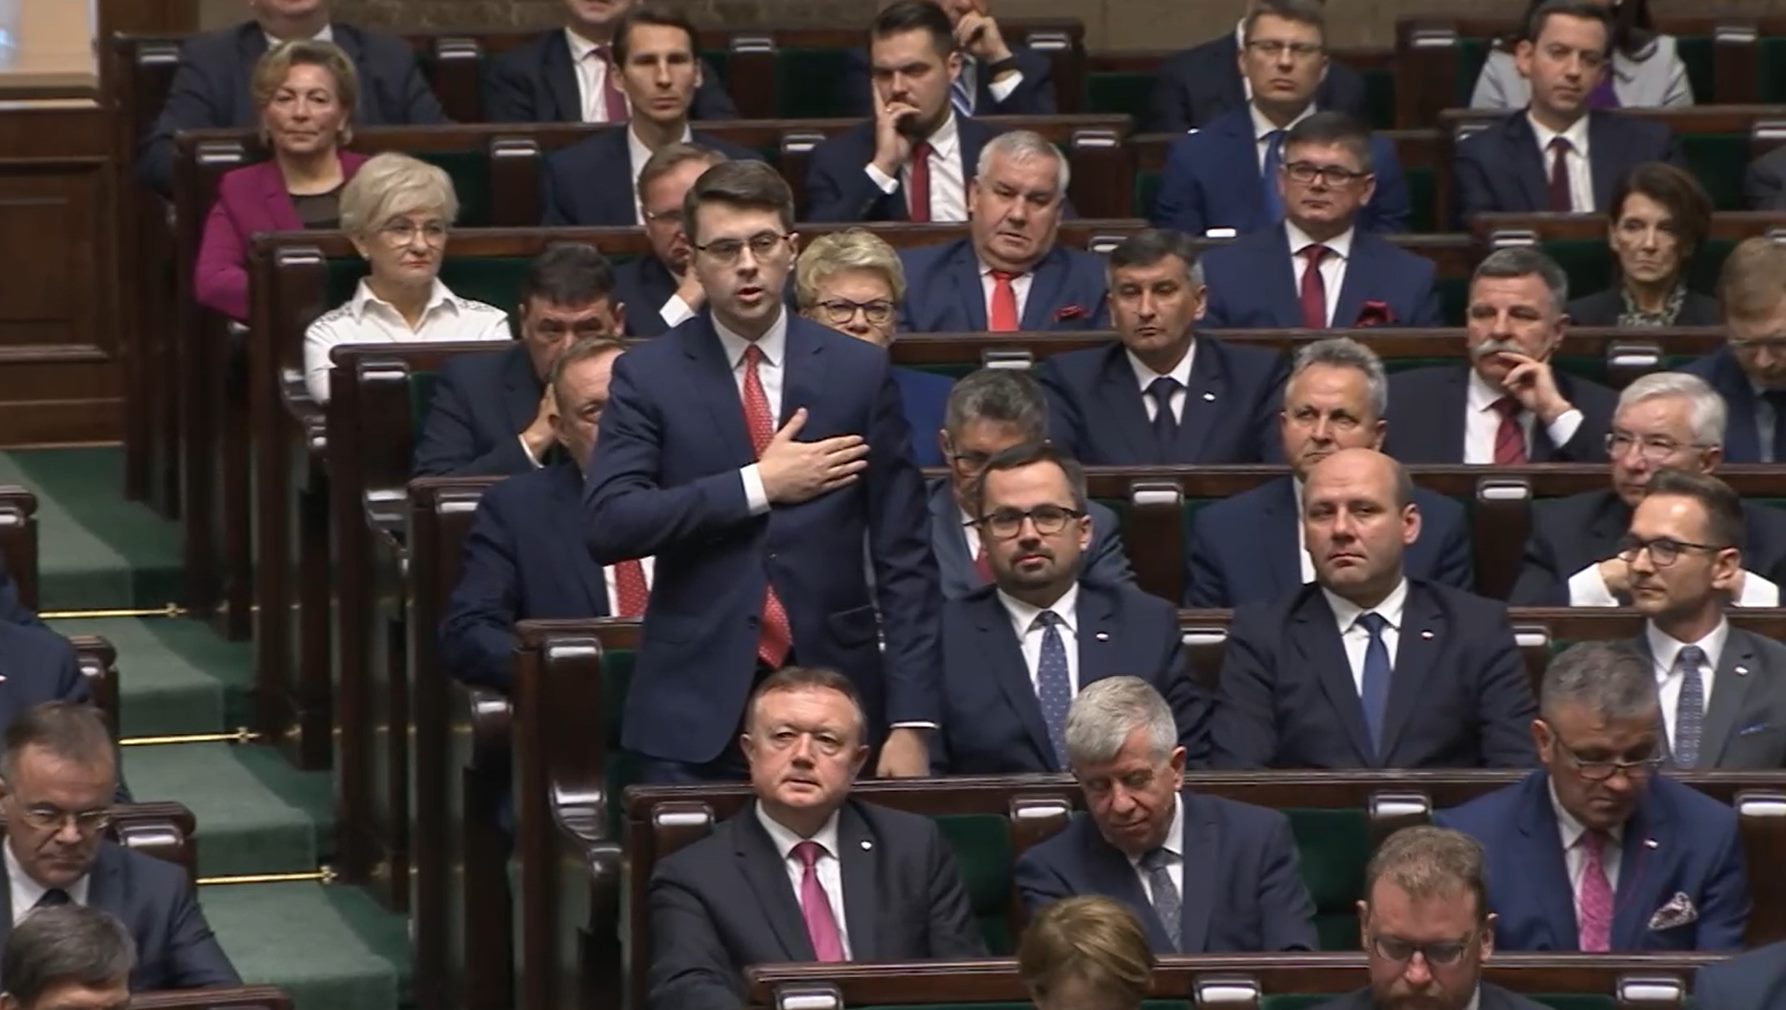 Pierwsze posiedzenie Sejmu IX kadencji